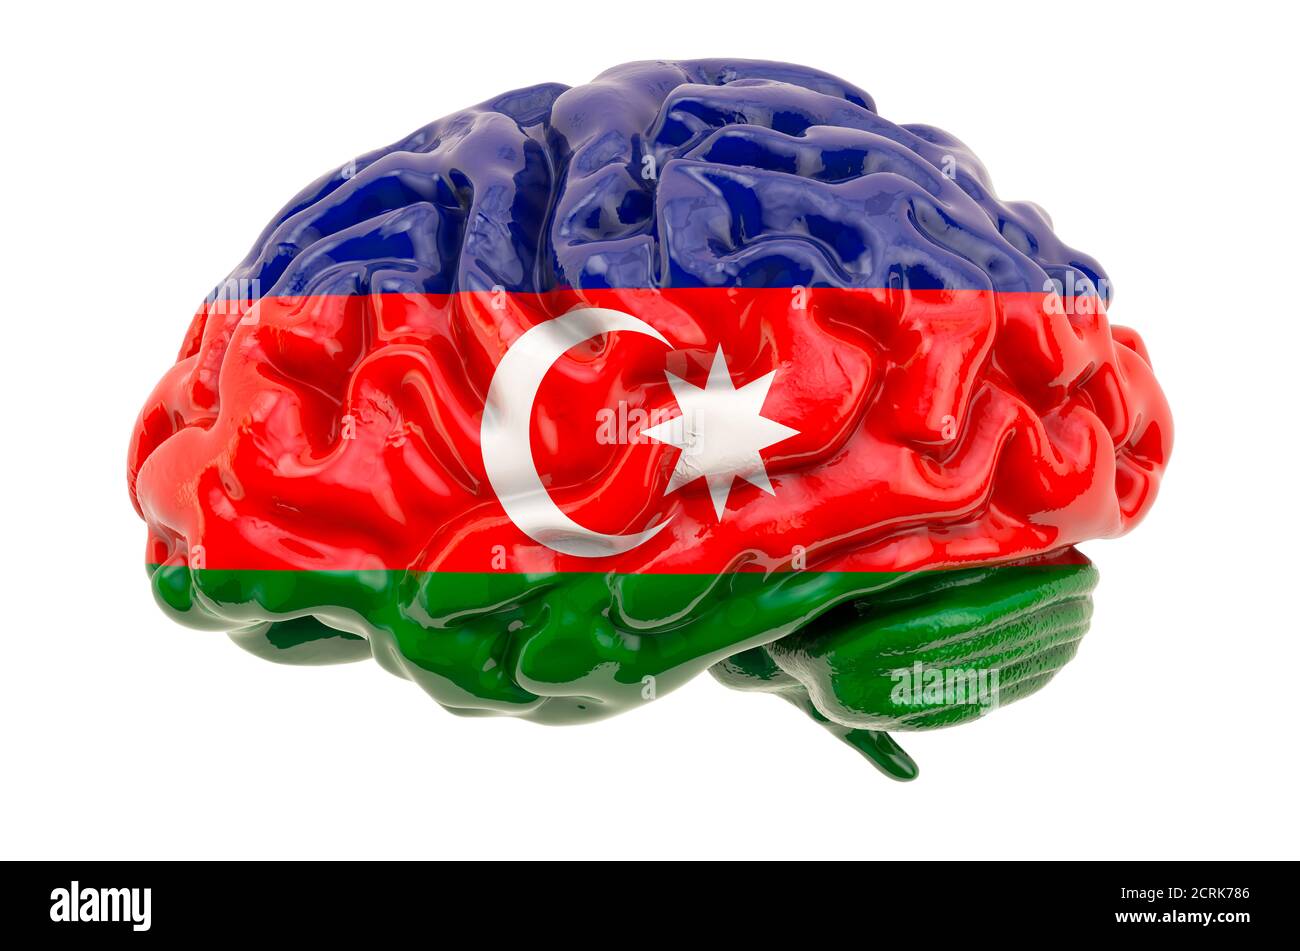 Cerebro humano con bandera azerbaiyana. Investigación científica y educación en Azerbaiyán concepto, 3D rendering aislado sobre fondo blanco Foto de stock